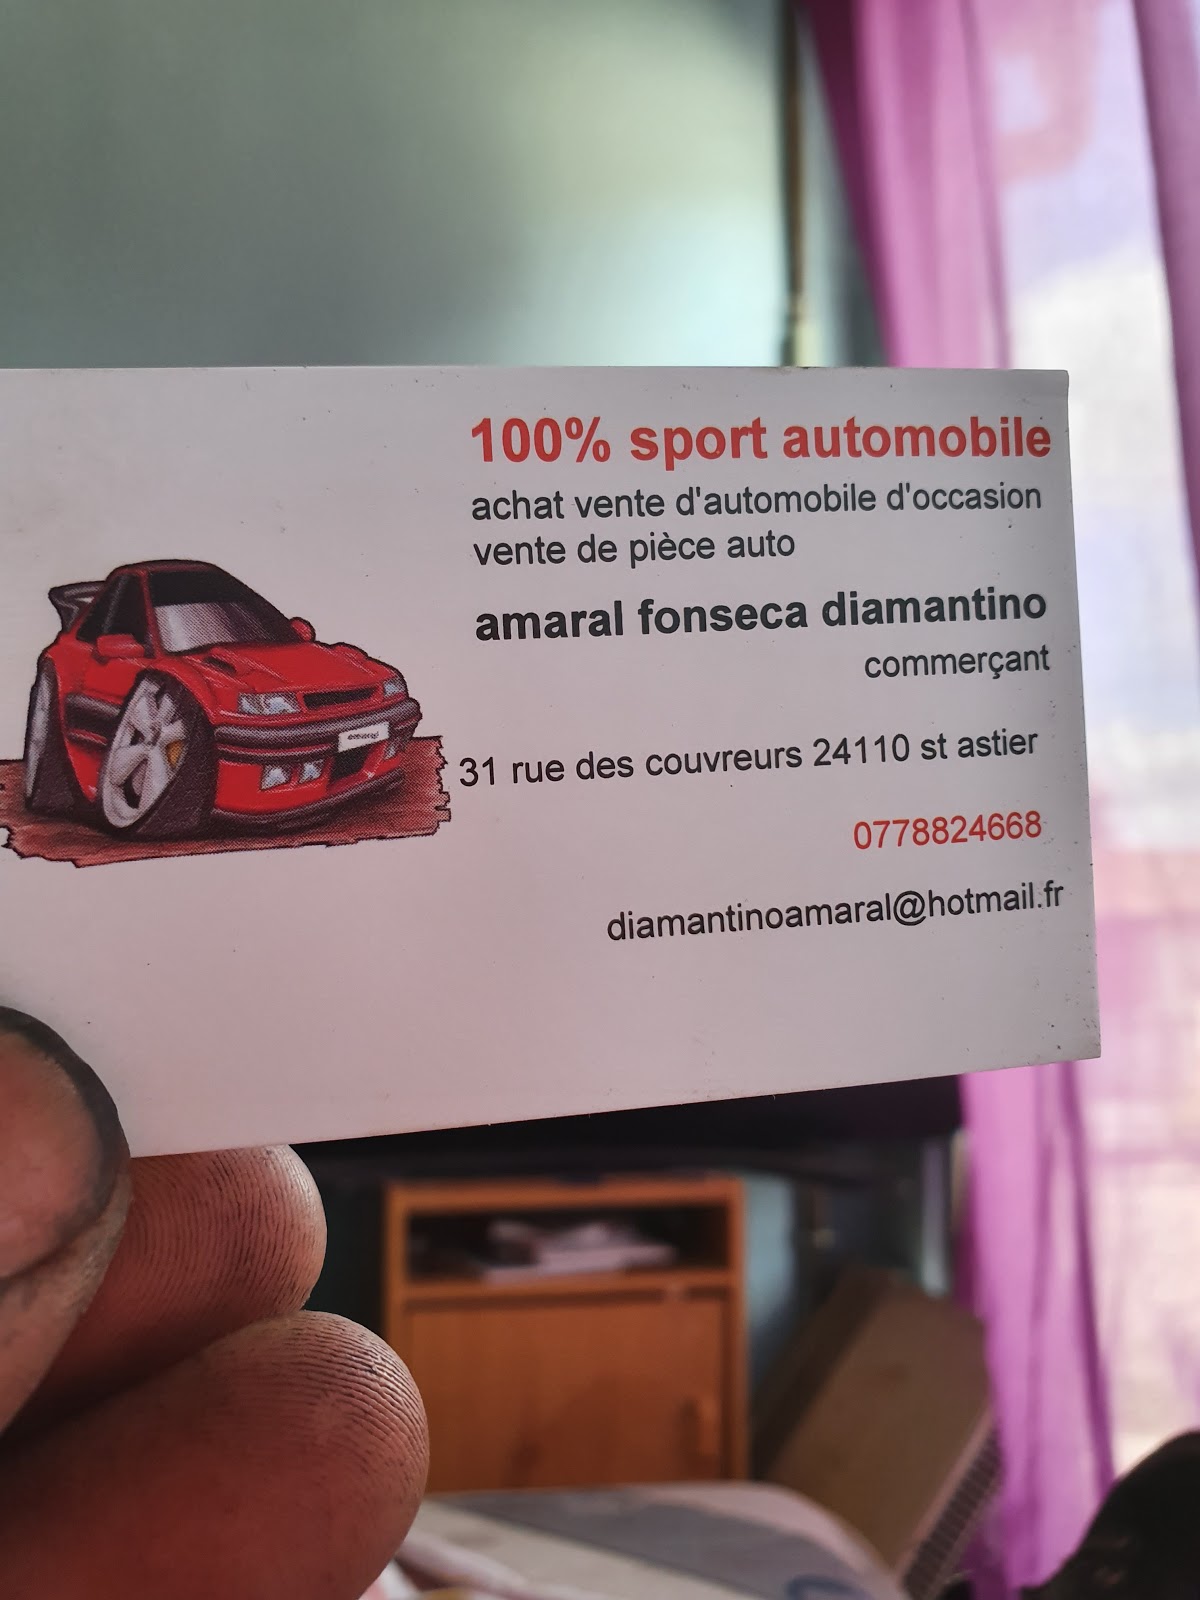 100% sport automobile